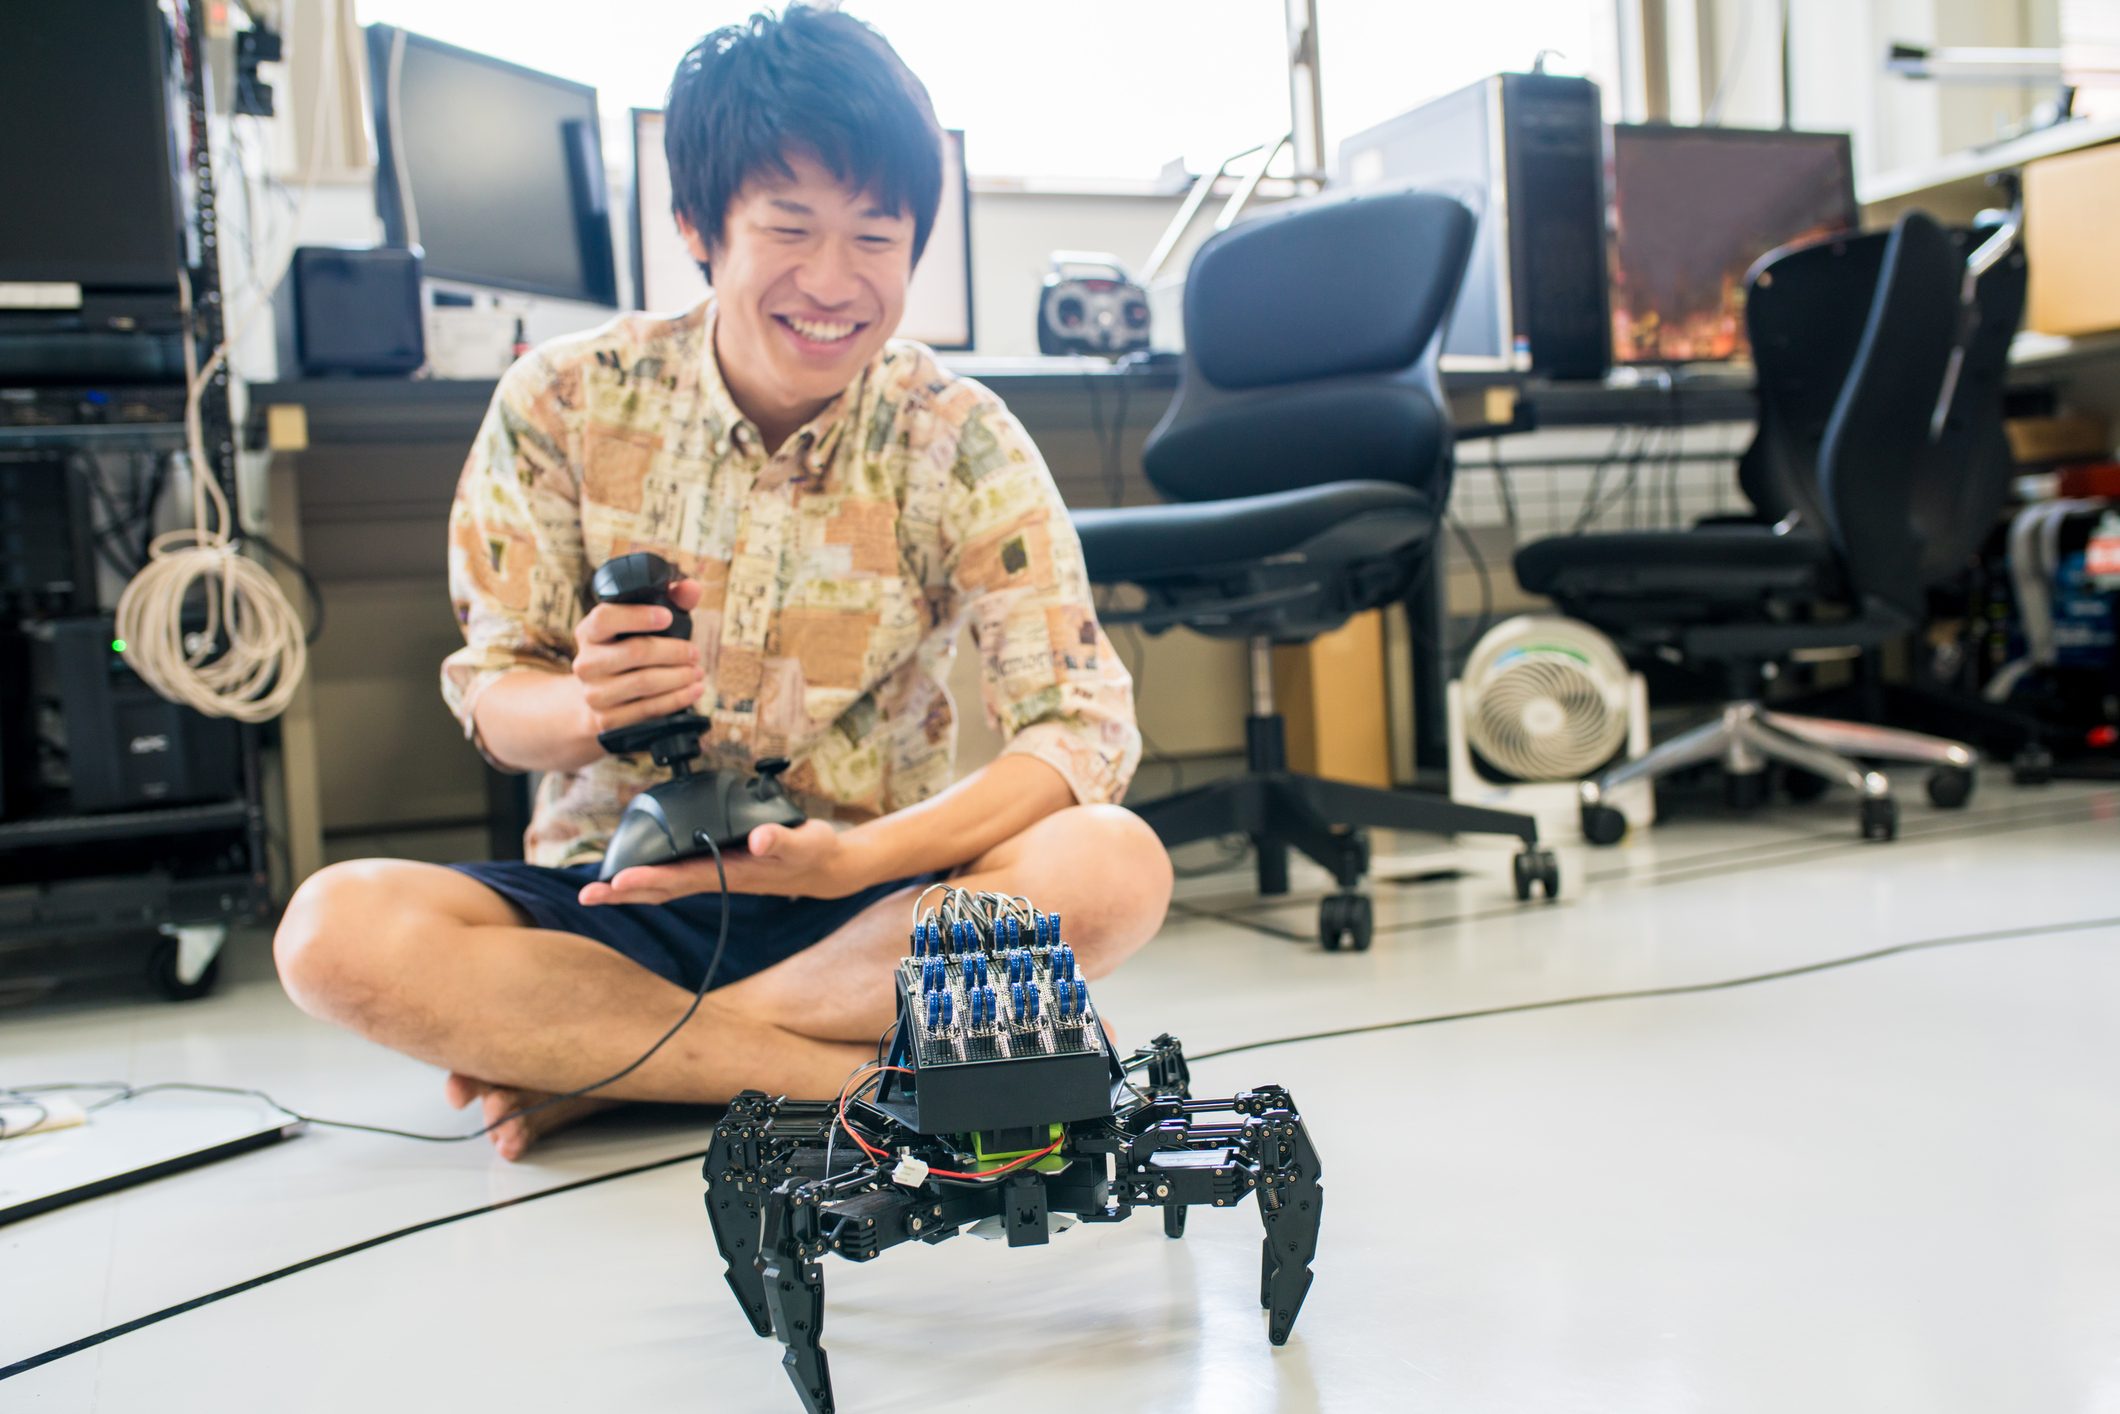 آي ستوك: طالب جامعي في مختبره باستخدام جهاز تحكم عن بعد لتحريك تصميمه الروبوتي. كيوتو في اليابان